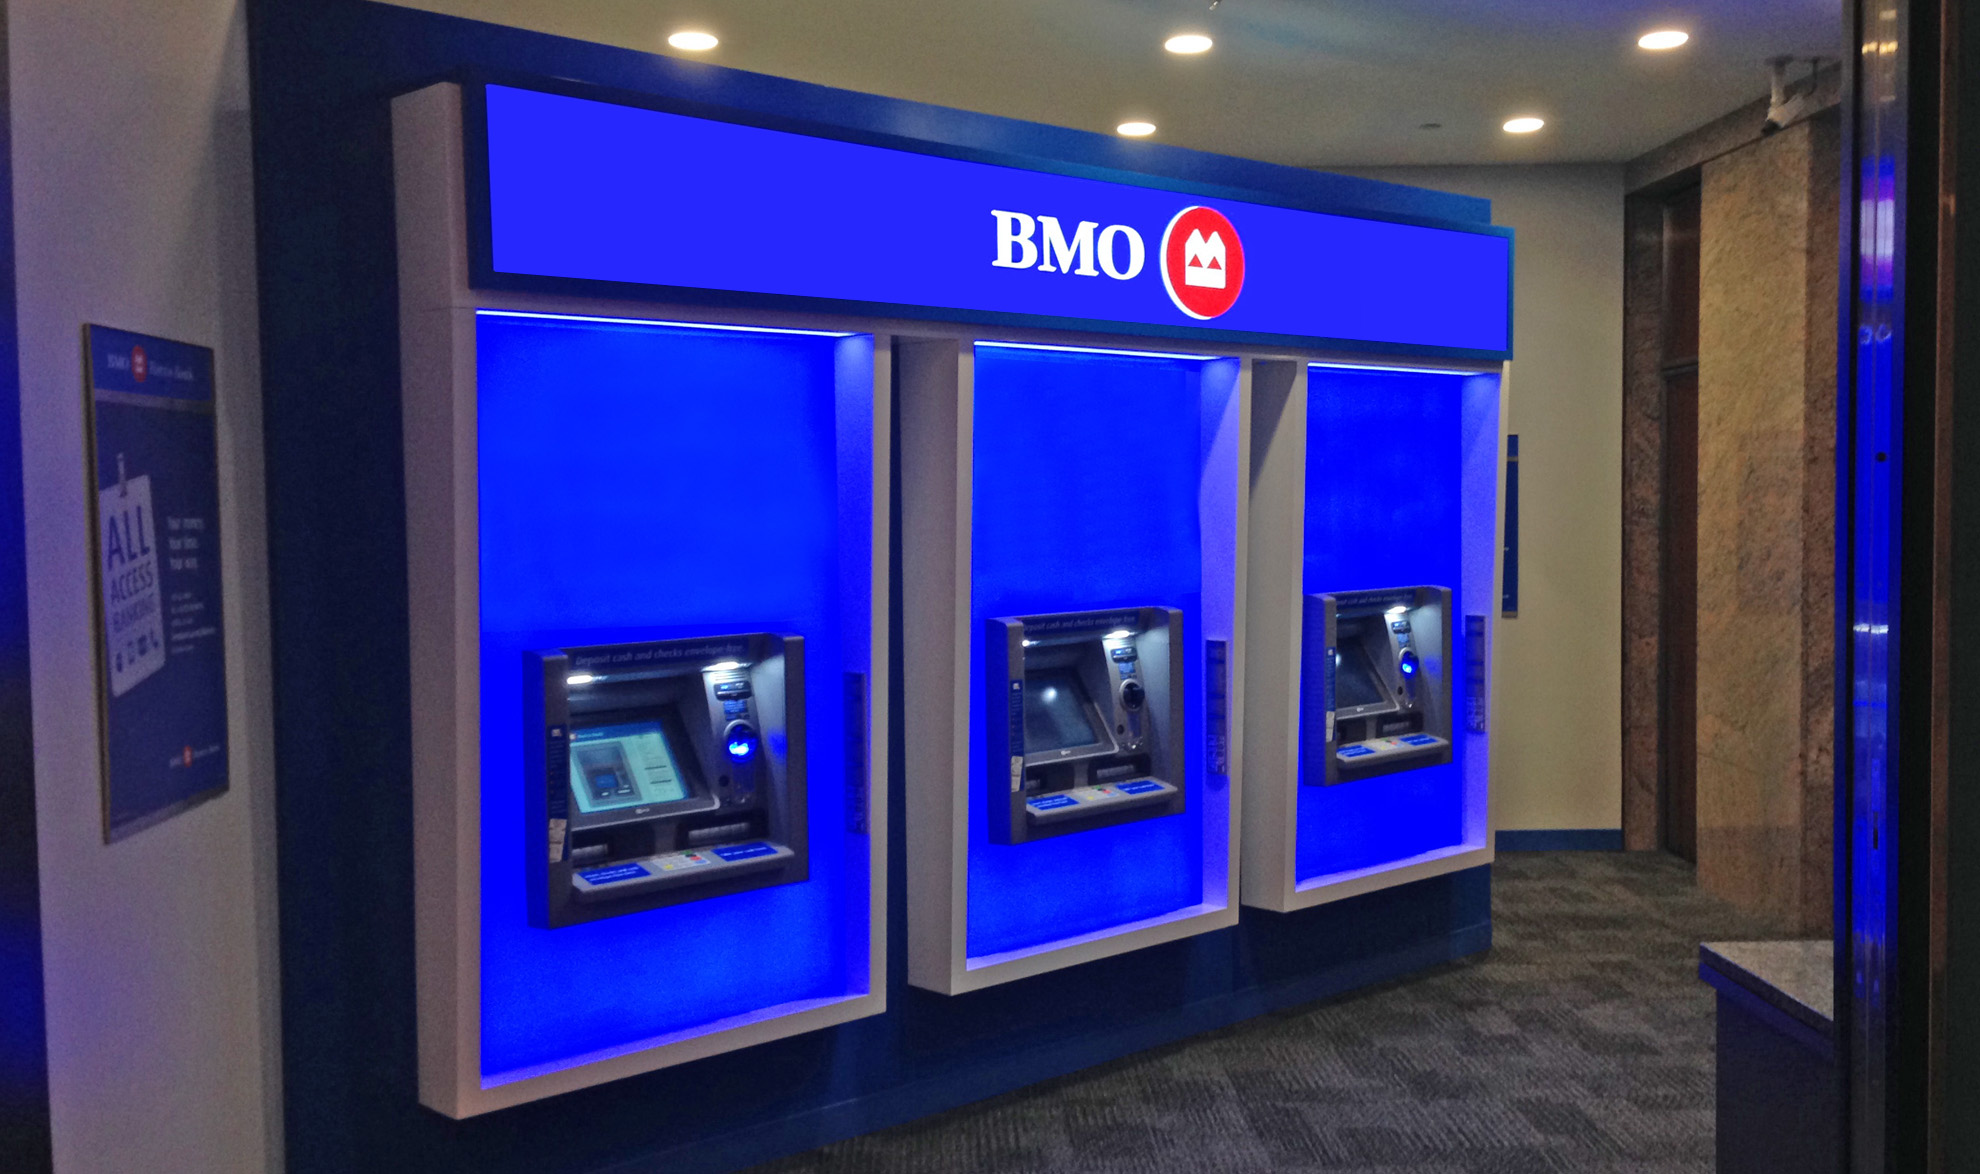 3 BMO ATMs